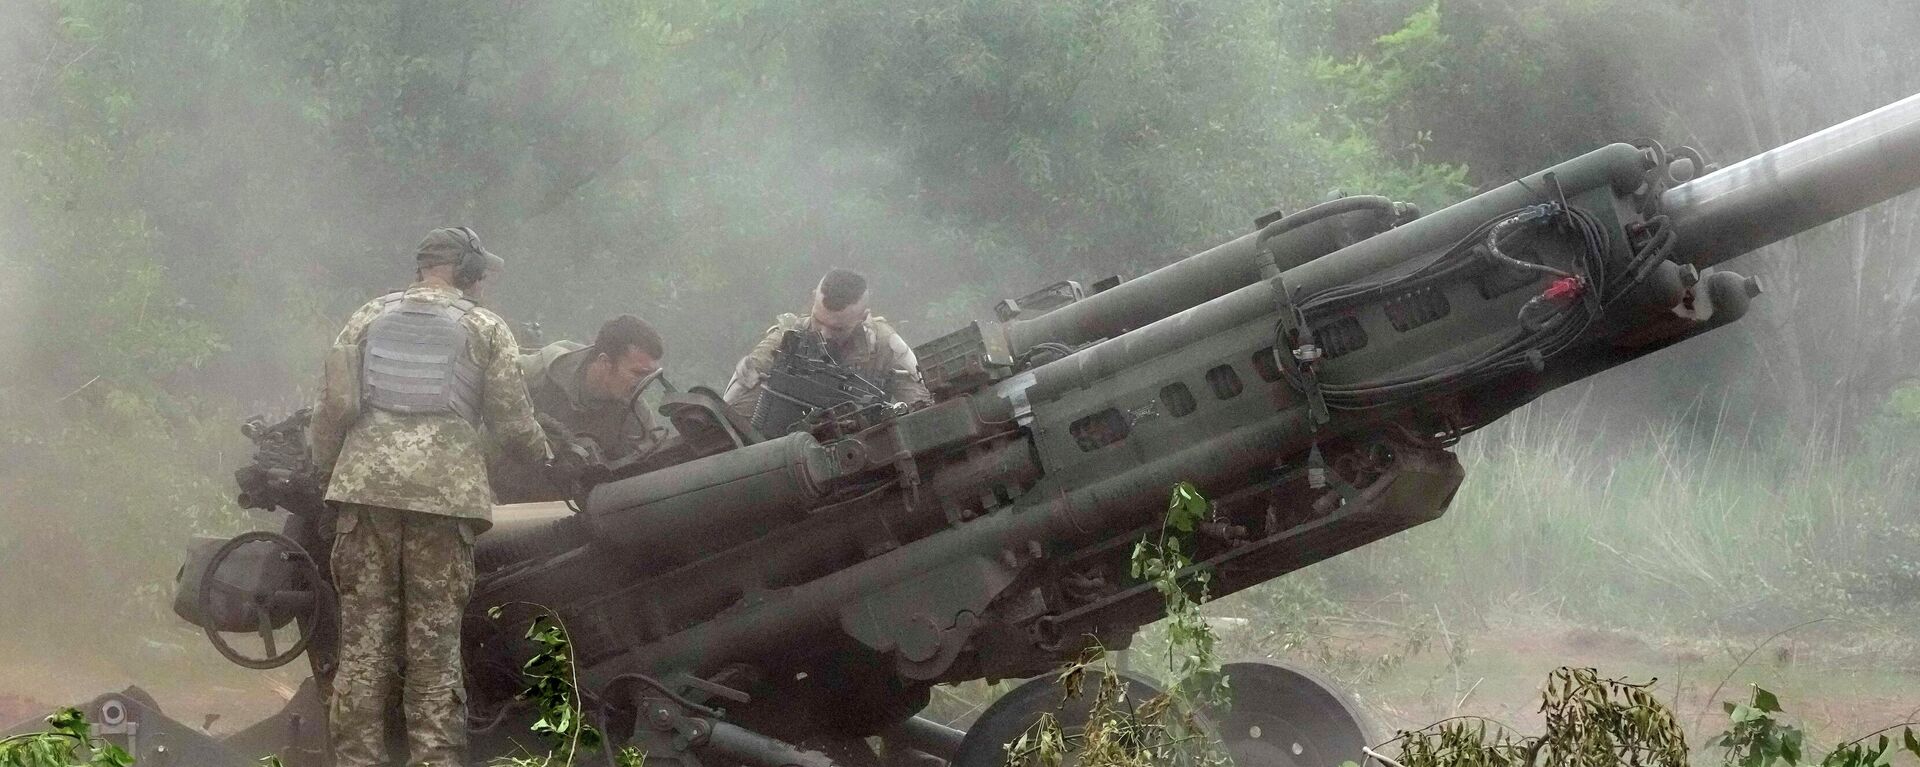 Militares ucranianos operam obuseiro M777, de 155 mm, fornecido pelos EUA - Sputnik Brasil, 1920, 23.06.2022